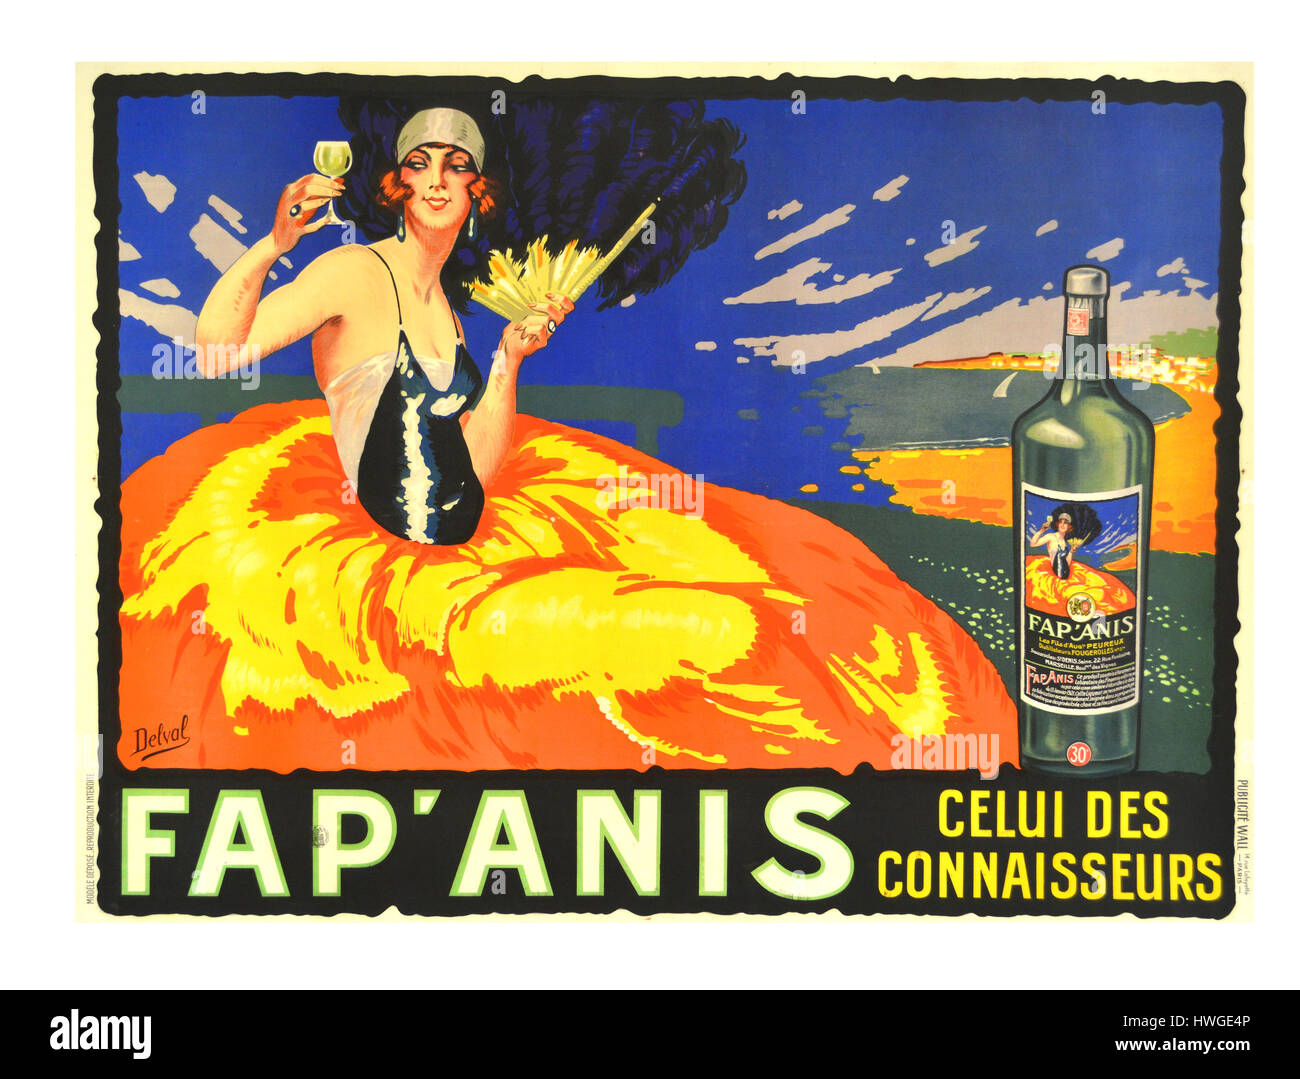 Vintage retro 1920er Jahre französische Plakat Werbung für einen Pastis Aperitif genannt Fap Anis mit Gaby Deslys eine renommierte Tänzerin und Sängerin die Schaffung von Pastis wurde als Reaktion auf das Verbot von seinem berüchtigten, Anis aromatisiert Vetter, Absinth in Frankreich im Jahre 1915. - Stockfoto